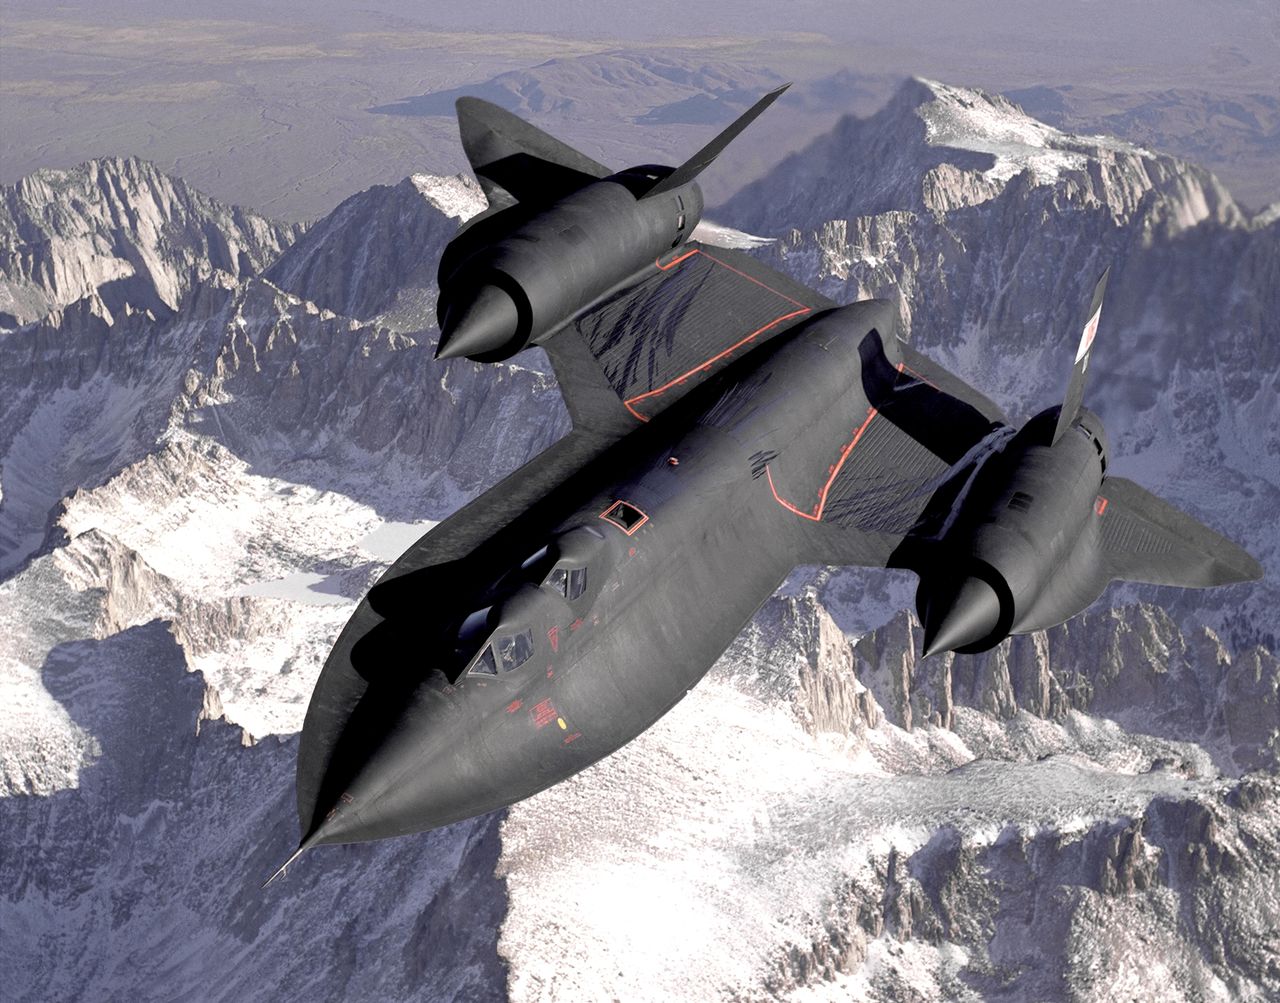 Jedyny taki samolot w historii. Szpiegowski odrzutowiec latający z trzykrotną prędkością dźwięku. SR-71 Blackbird